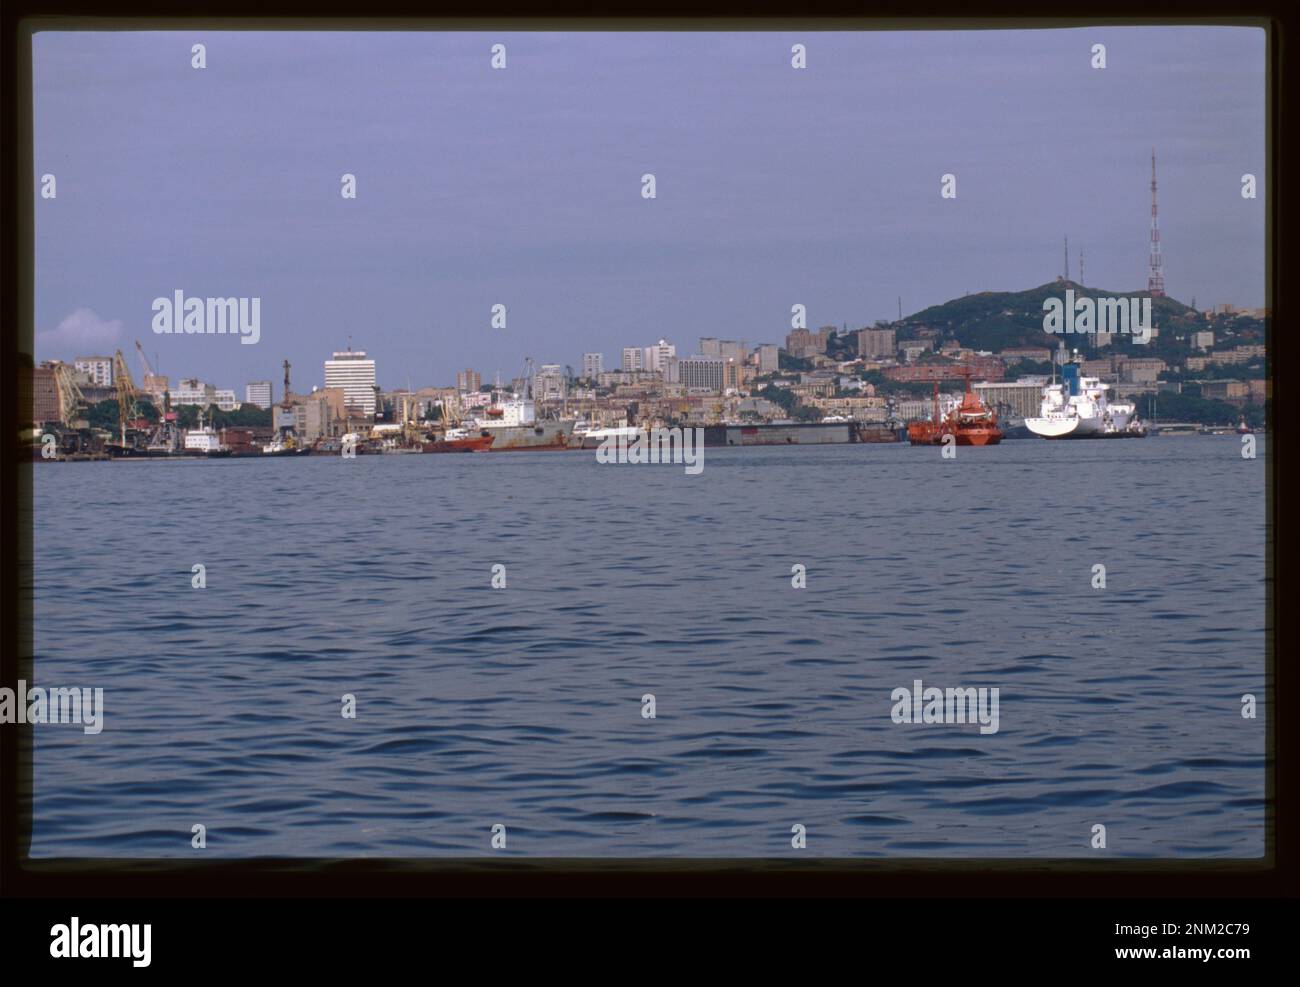 Port de Vladivostok, vue depuis la baie de Golden Horn, Vladivostok, Russie. Collection de photographies Brumfield. Ports,Fédération de Russie,2000-2010. , Fédération de Russie,Primorskii krai,Vladivostok. Banque D'Images